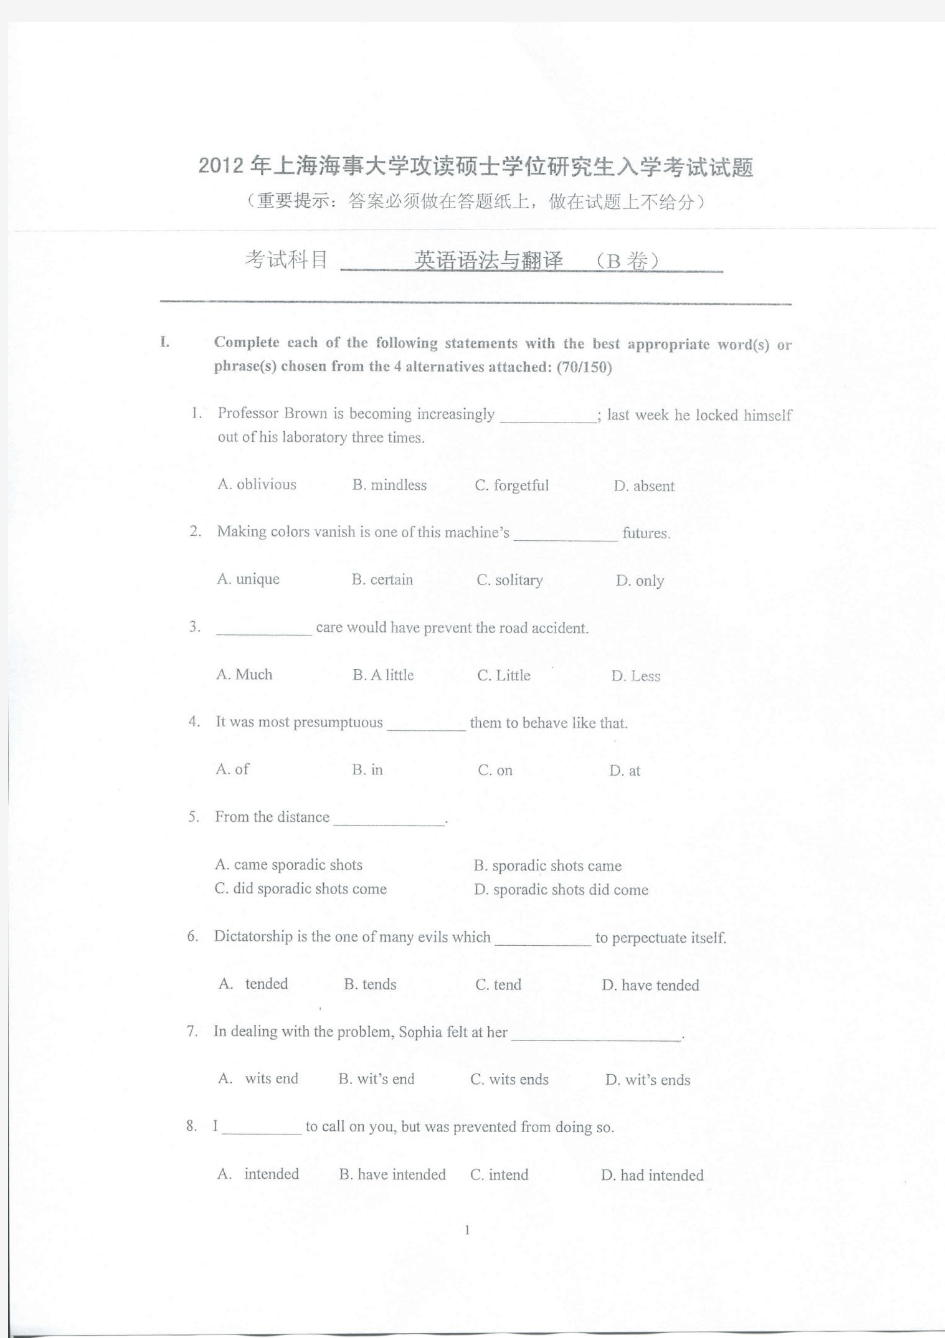 上海海事大学-2012年攻读硕士学位研究生入学考试试题-英语与法语翻译